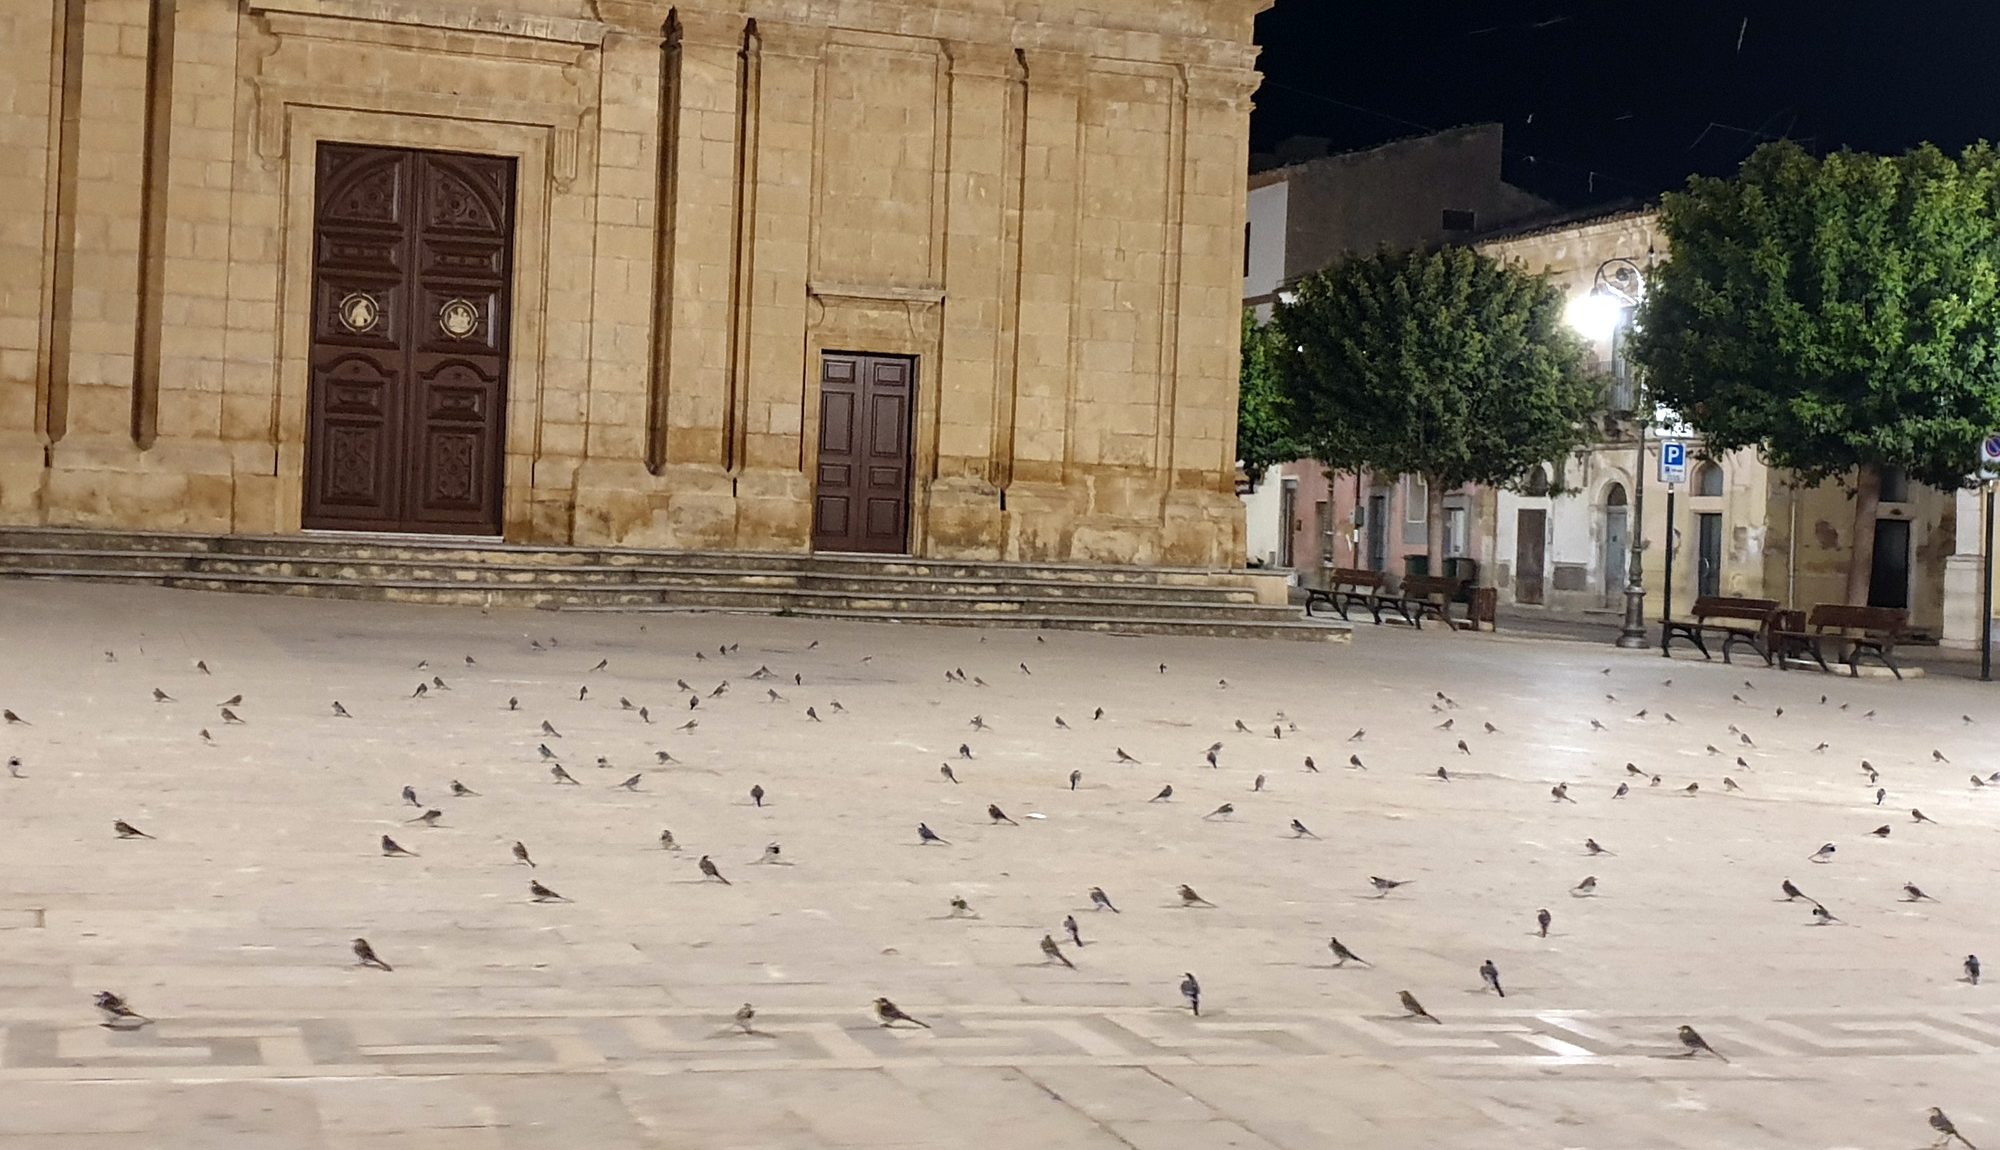  Stormi di uccelli s’impossessano dell’agorà: in giro per piazza V.Emanuele